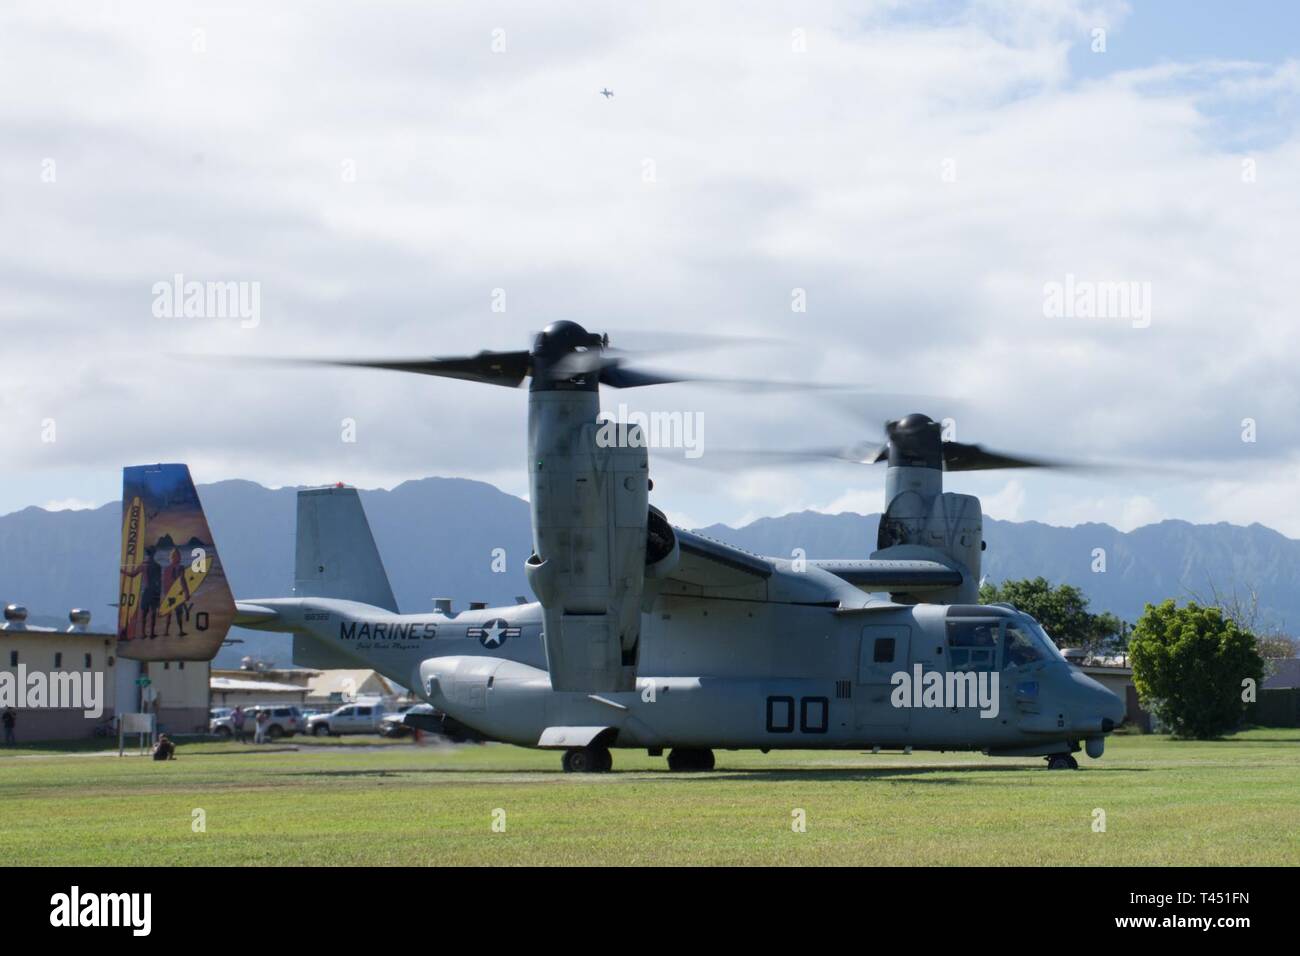 Une MV-22B hélicoptère à rotors basculants Osprey avec l'escadron 268 à rotors basculants moyen maritime à la zone d'atterrissage 216 après avoir récupéré une simulation d'écrasement d'un aéronef au cours d'un pilote de recherche et sauvetage de combat à la formation de base du Corps des Marines, Hawaii le 26 février 2019. Le service commun de formation CSAR renforcement de capacités d'intervention de crise pour inclure la localisation, la communication, en fournissant des soins médicaux et de la récupération du membre isolé. Banque D'Images